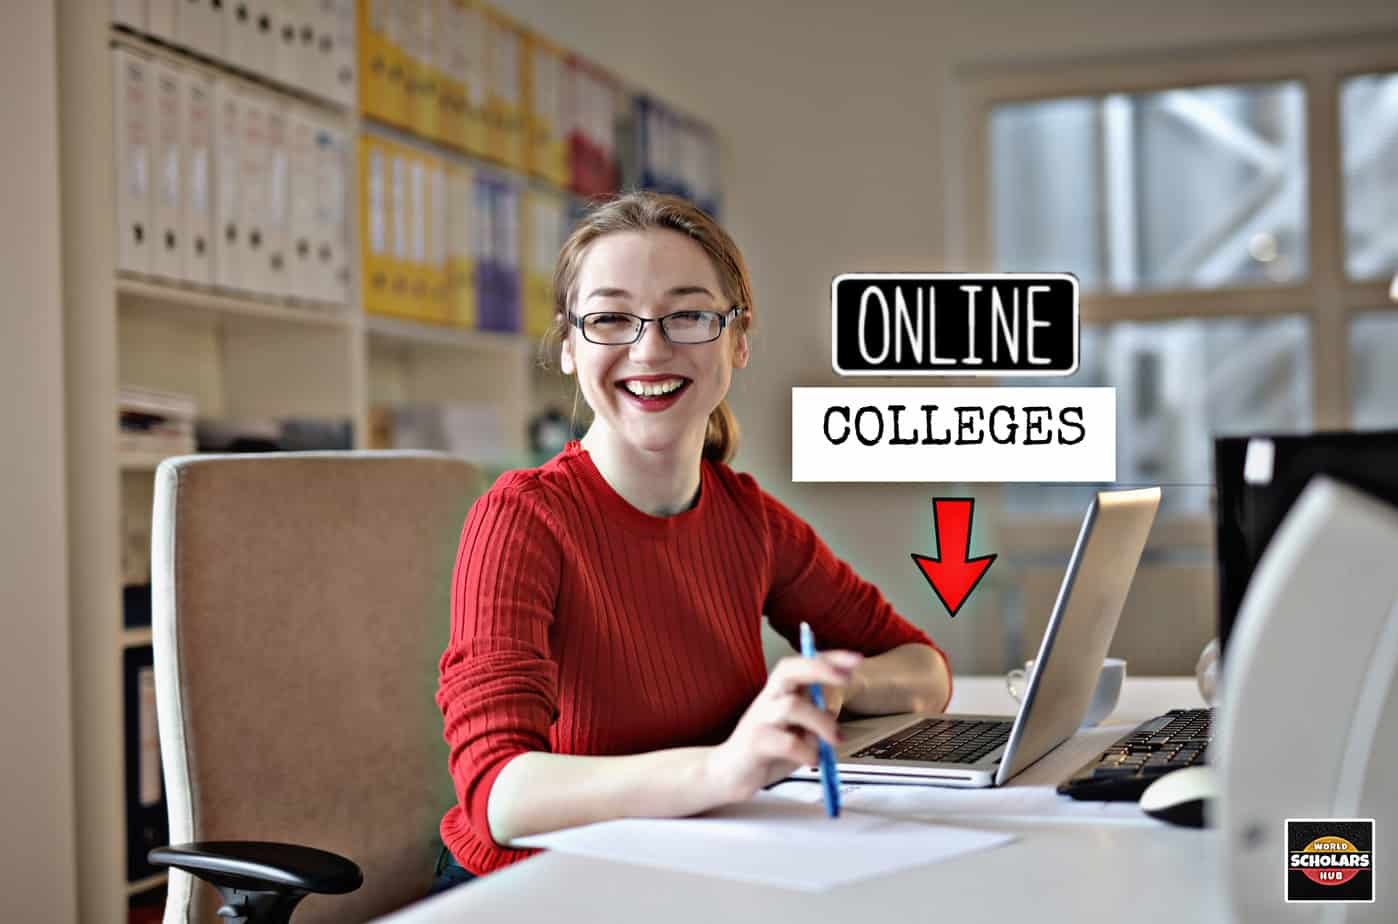 Internetowe uczelnie oferujące laptopy